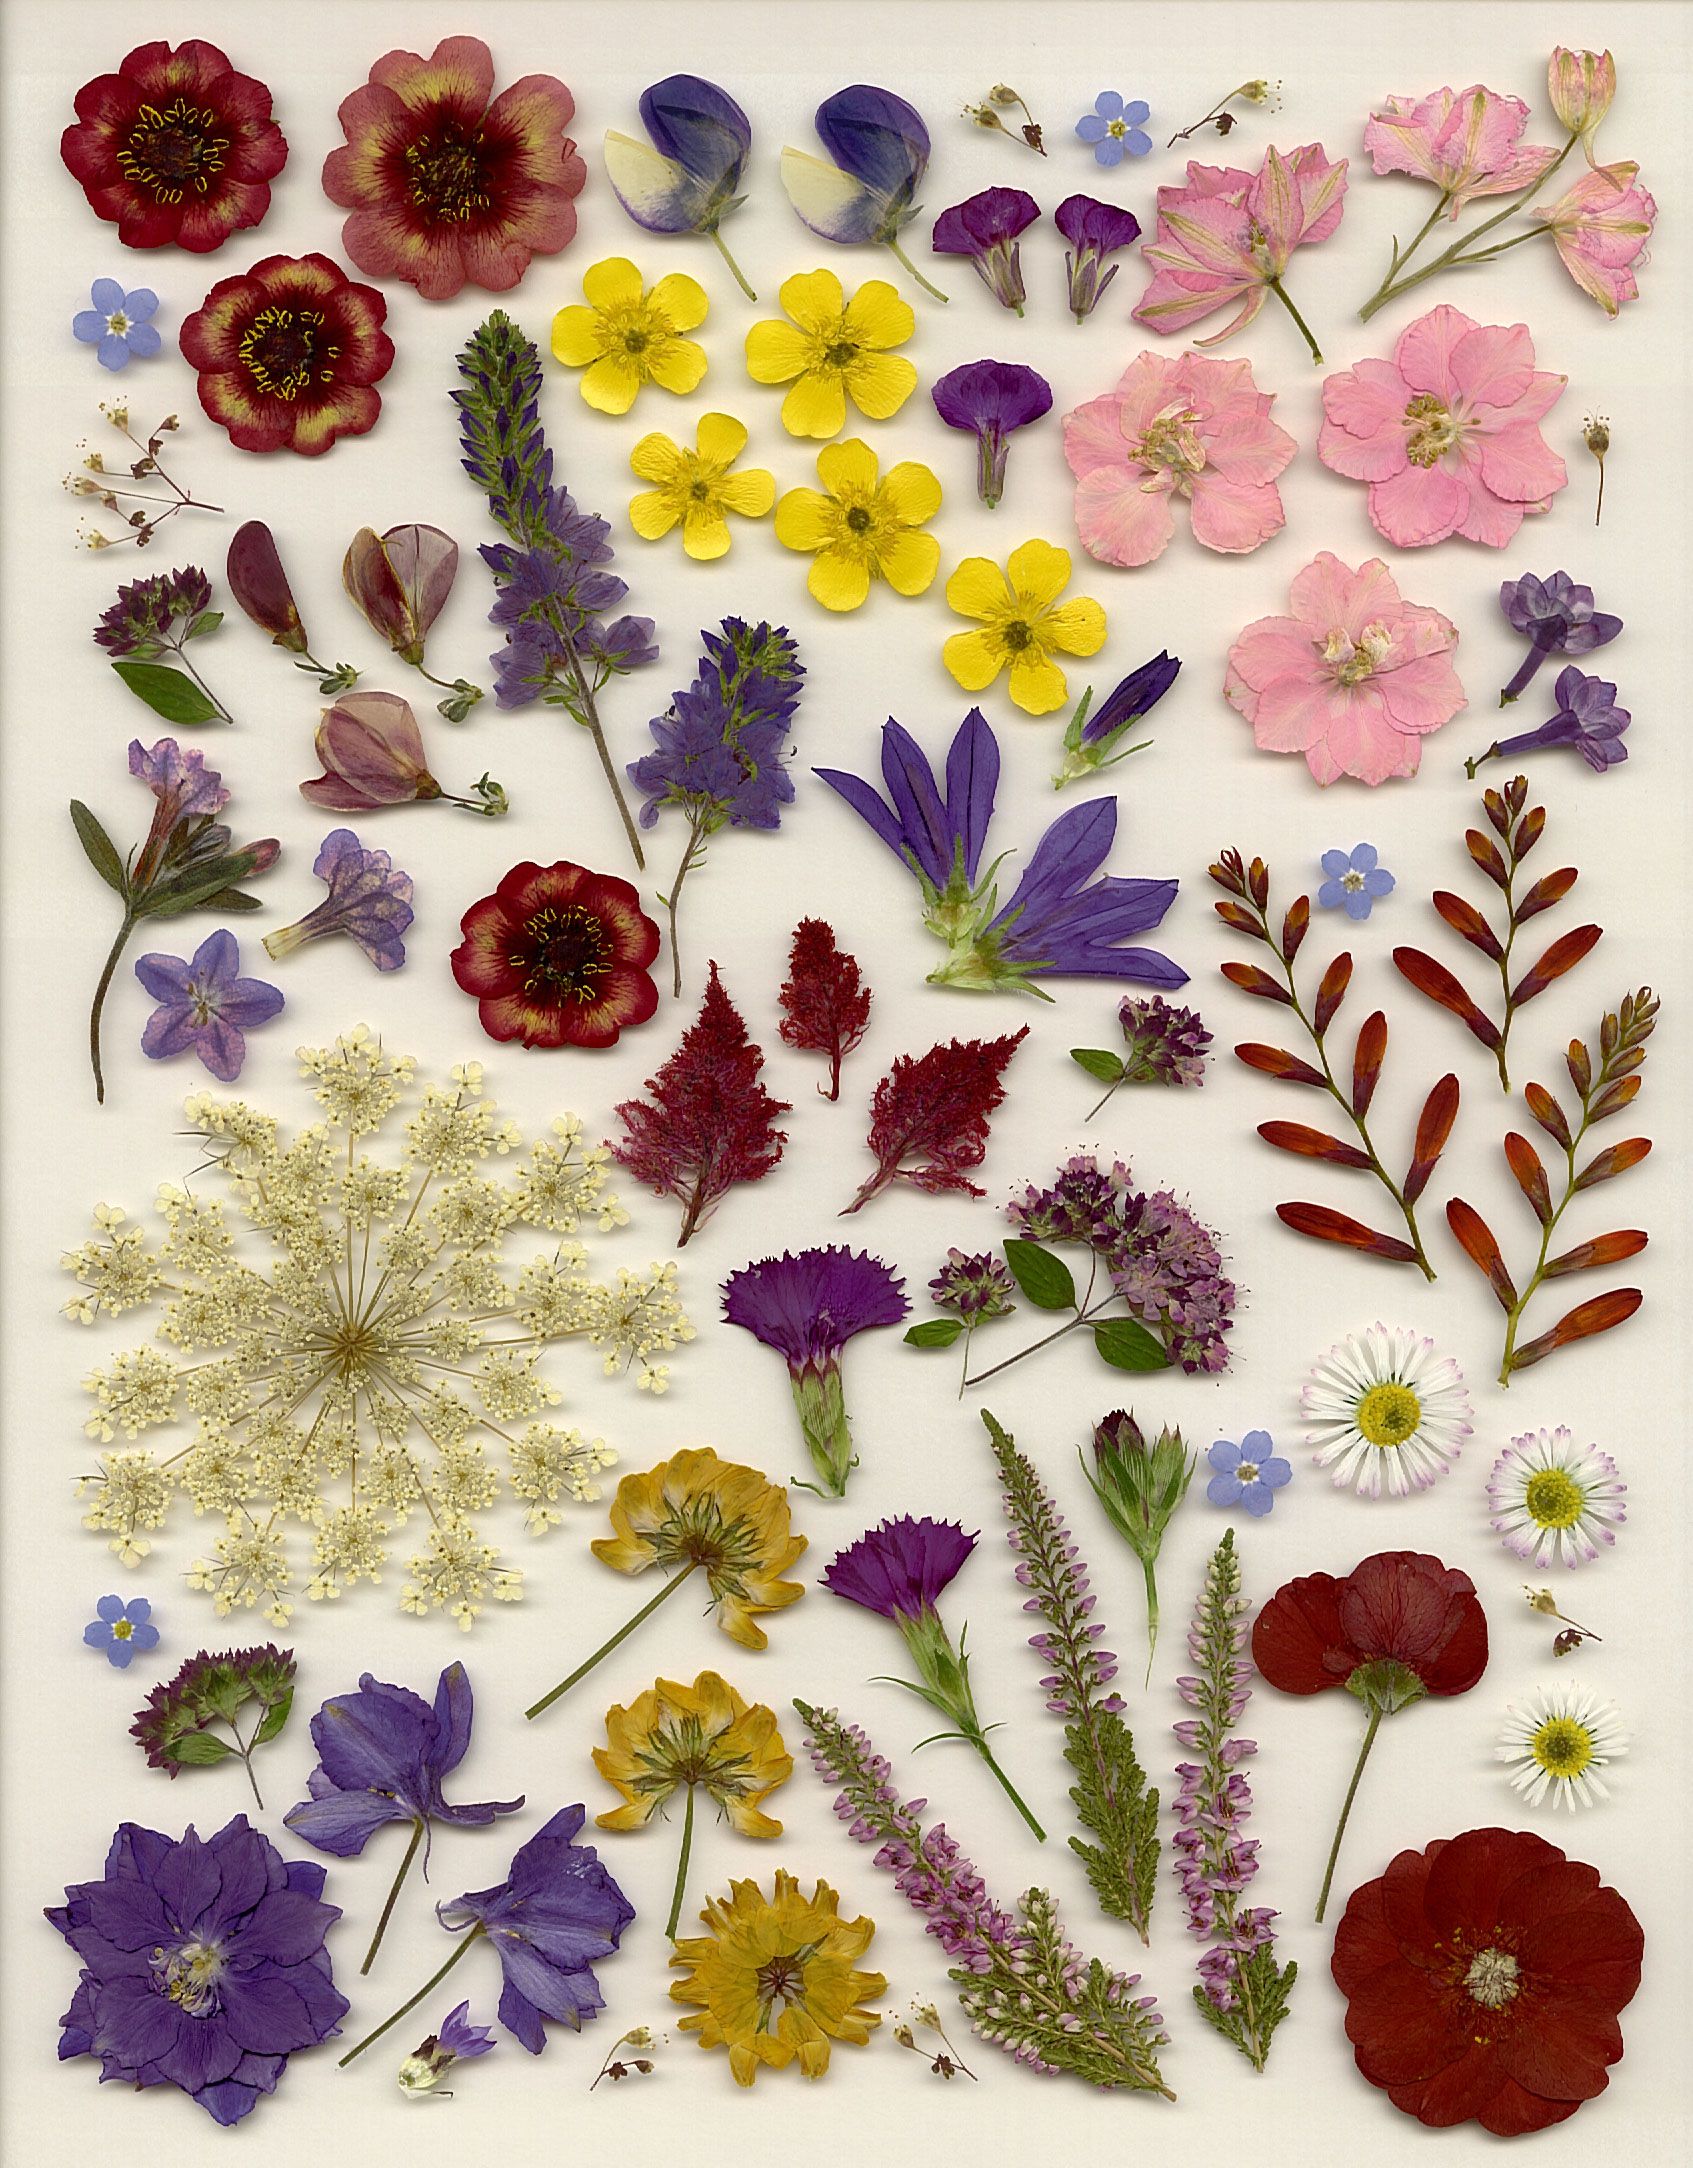 Variety of pressed flowers